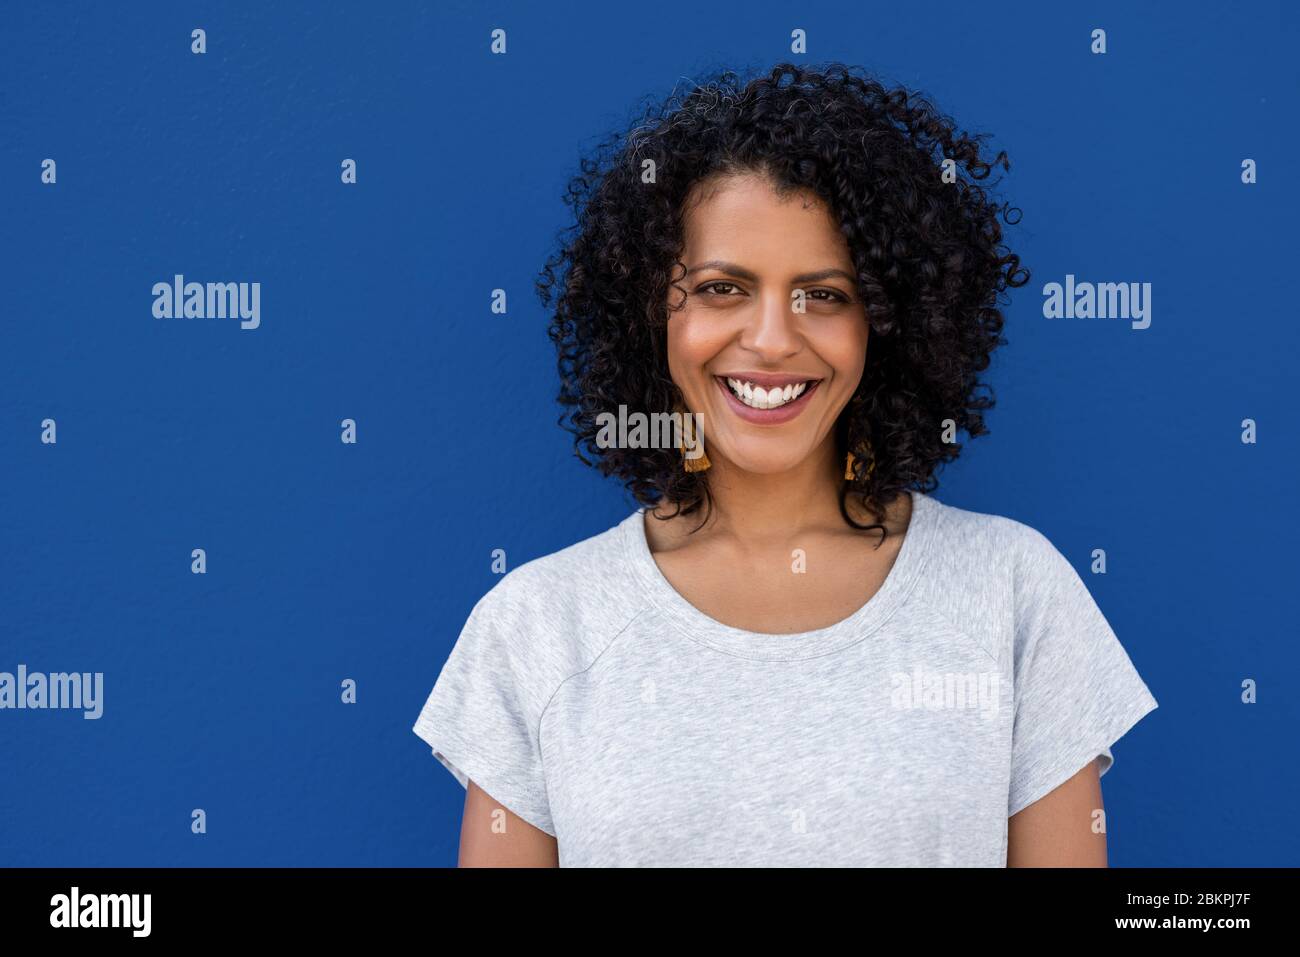 Lächelnde junge Frau steht vor einem bunten blauen Hintergrund Stockfoto